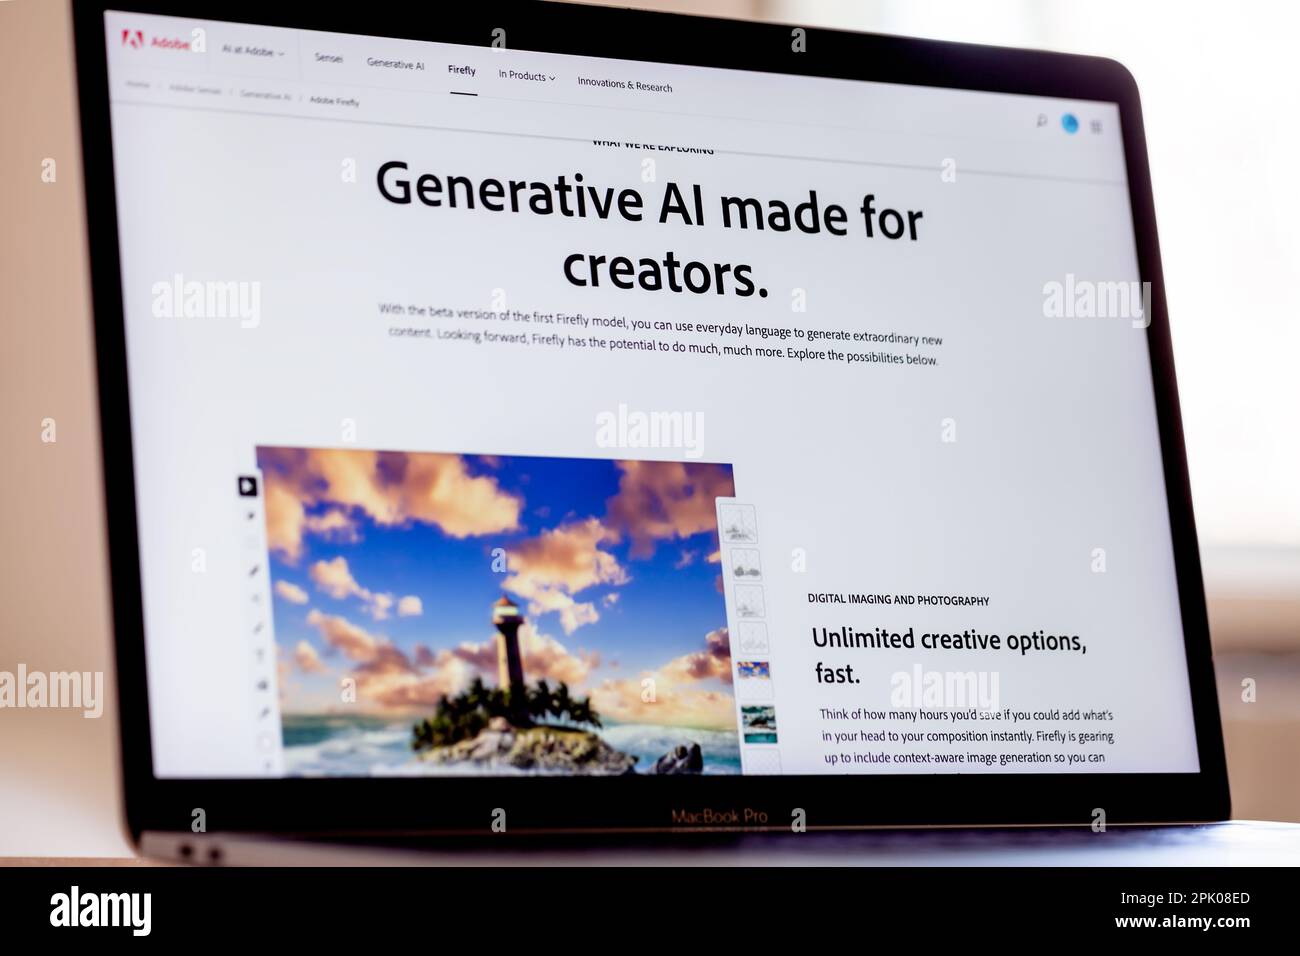 ITALIE - 4 avril 2023 : site Web d'Adobe Firefly affiché sur l'écran de l'ordinateur portable mac. Adobe a annoncé la version bêta de son outil ai Art Generator. Banque D'Images